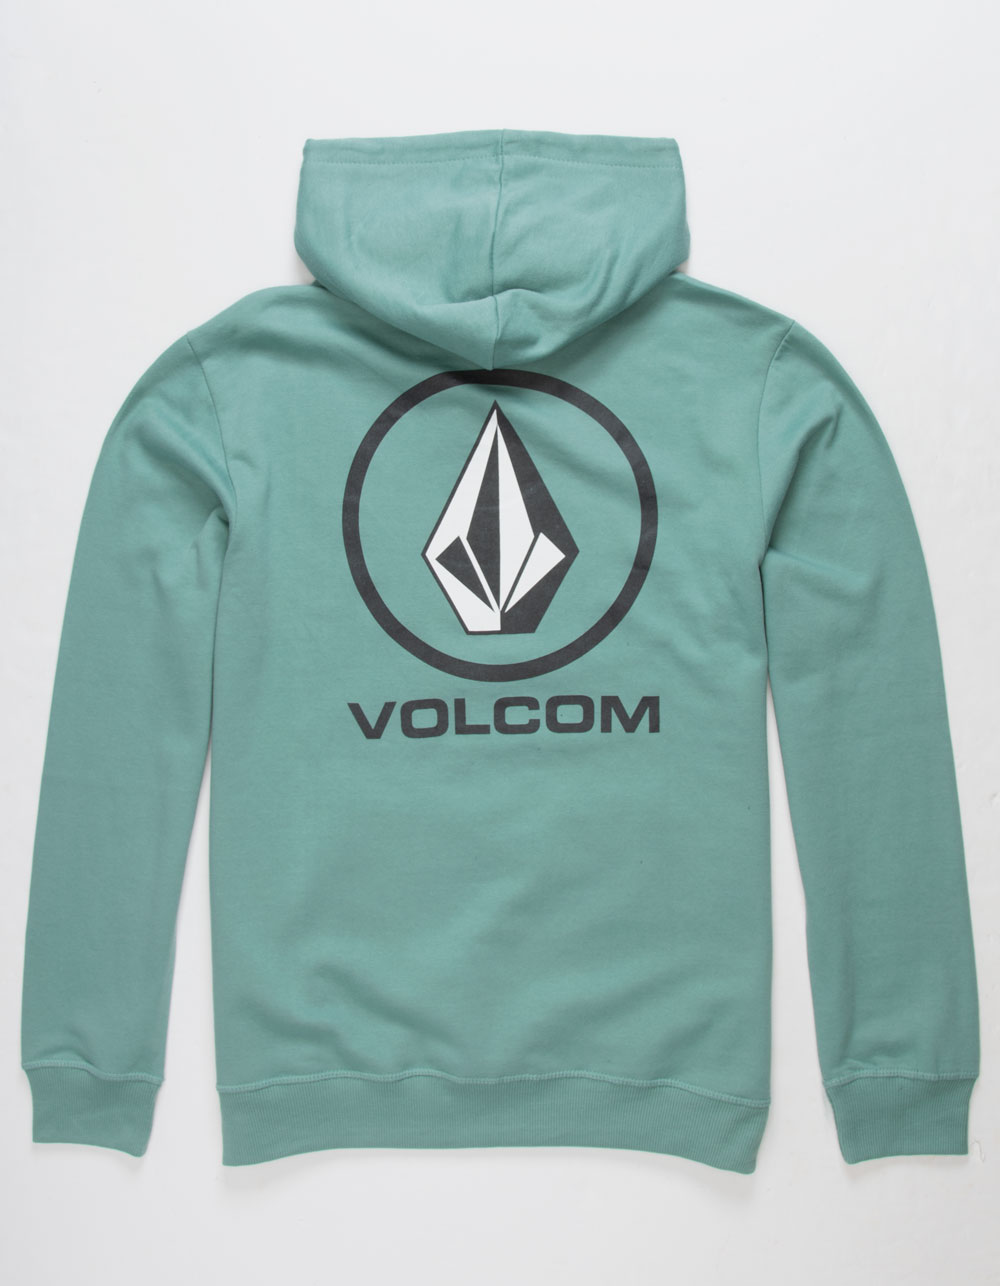 Volcom Clothing: Hoodies & T-Shirts | Tillys